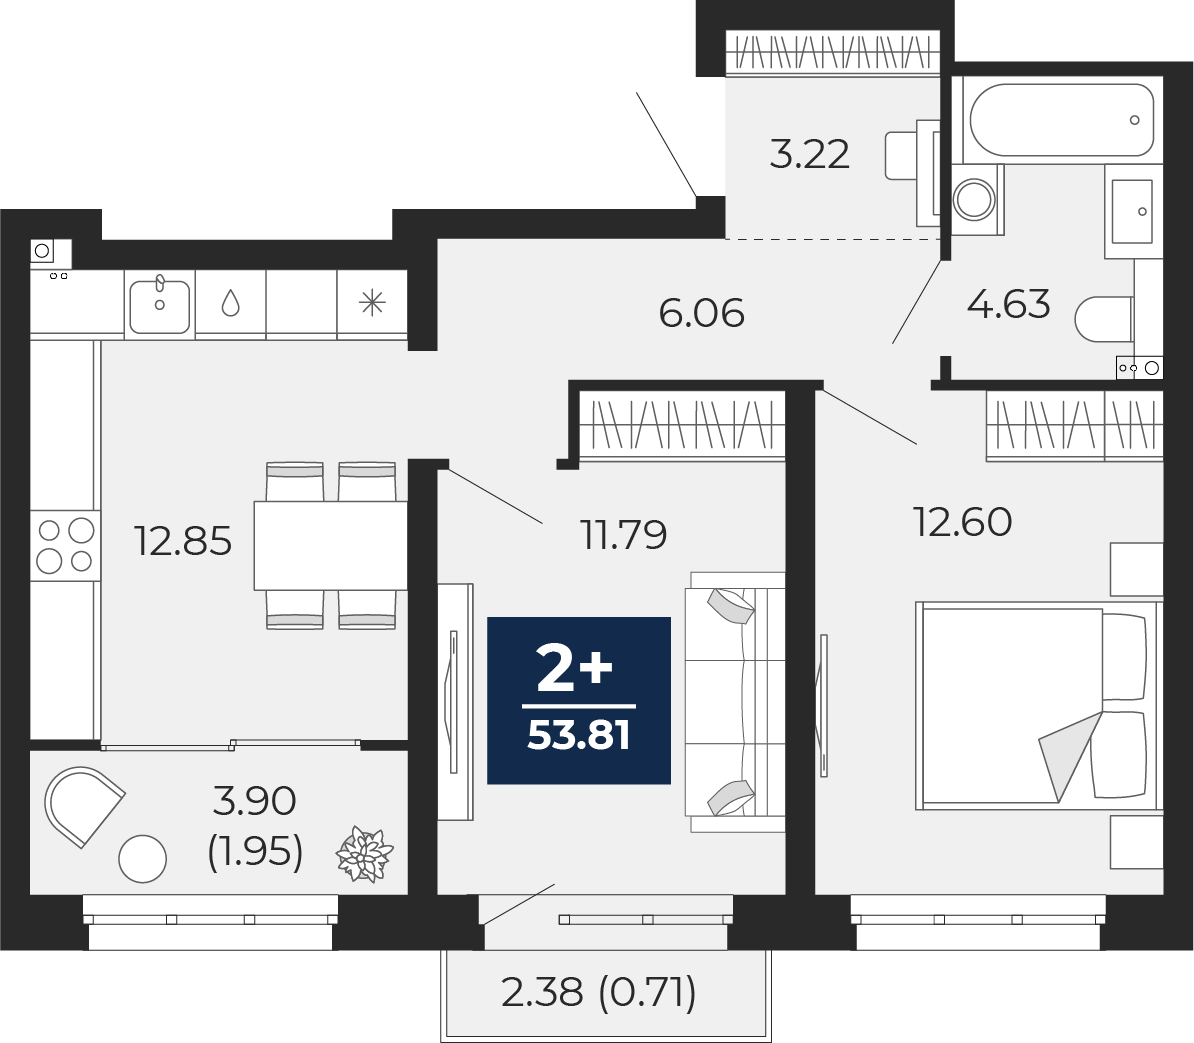 Квартира № 562, 2-комнатная, 53.81 кв. м, 4 этаж